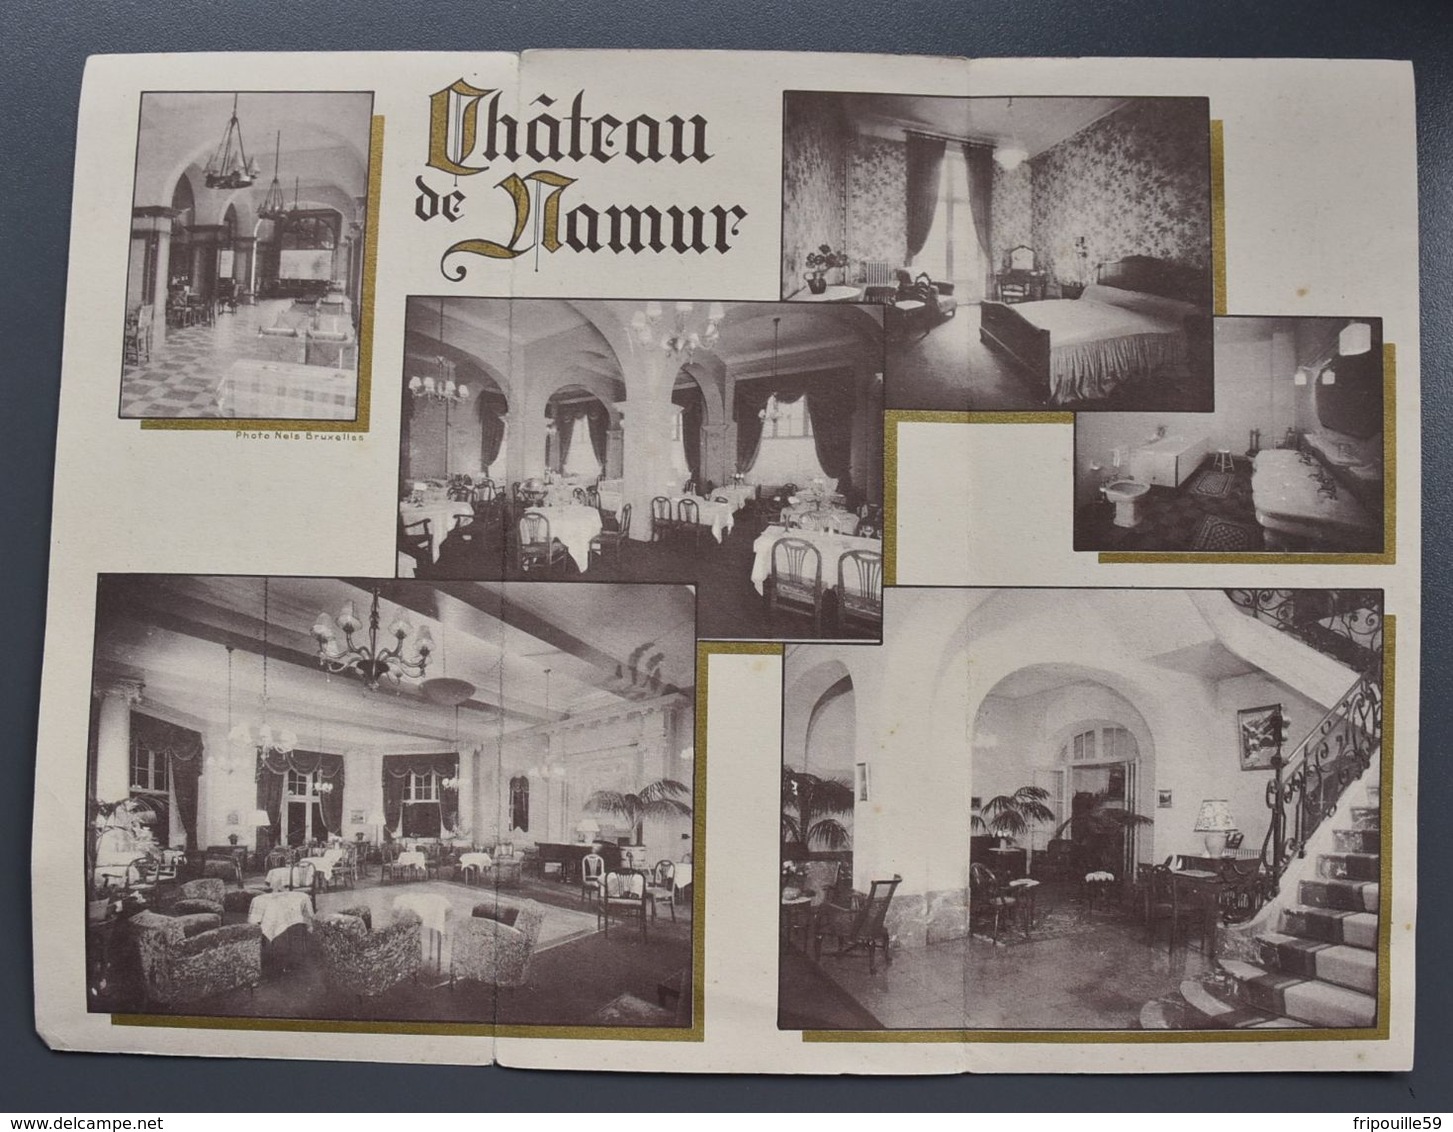 Dépliant - Hôtel-Restaurant Château De Namur - Citadelle - Photos Nels, Bruxelles - Vers 1940-50 - Reiseprospekte